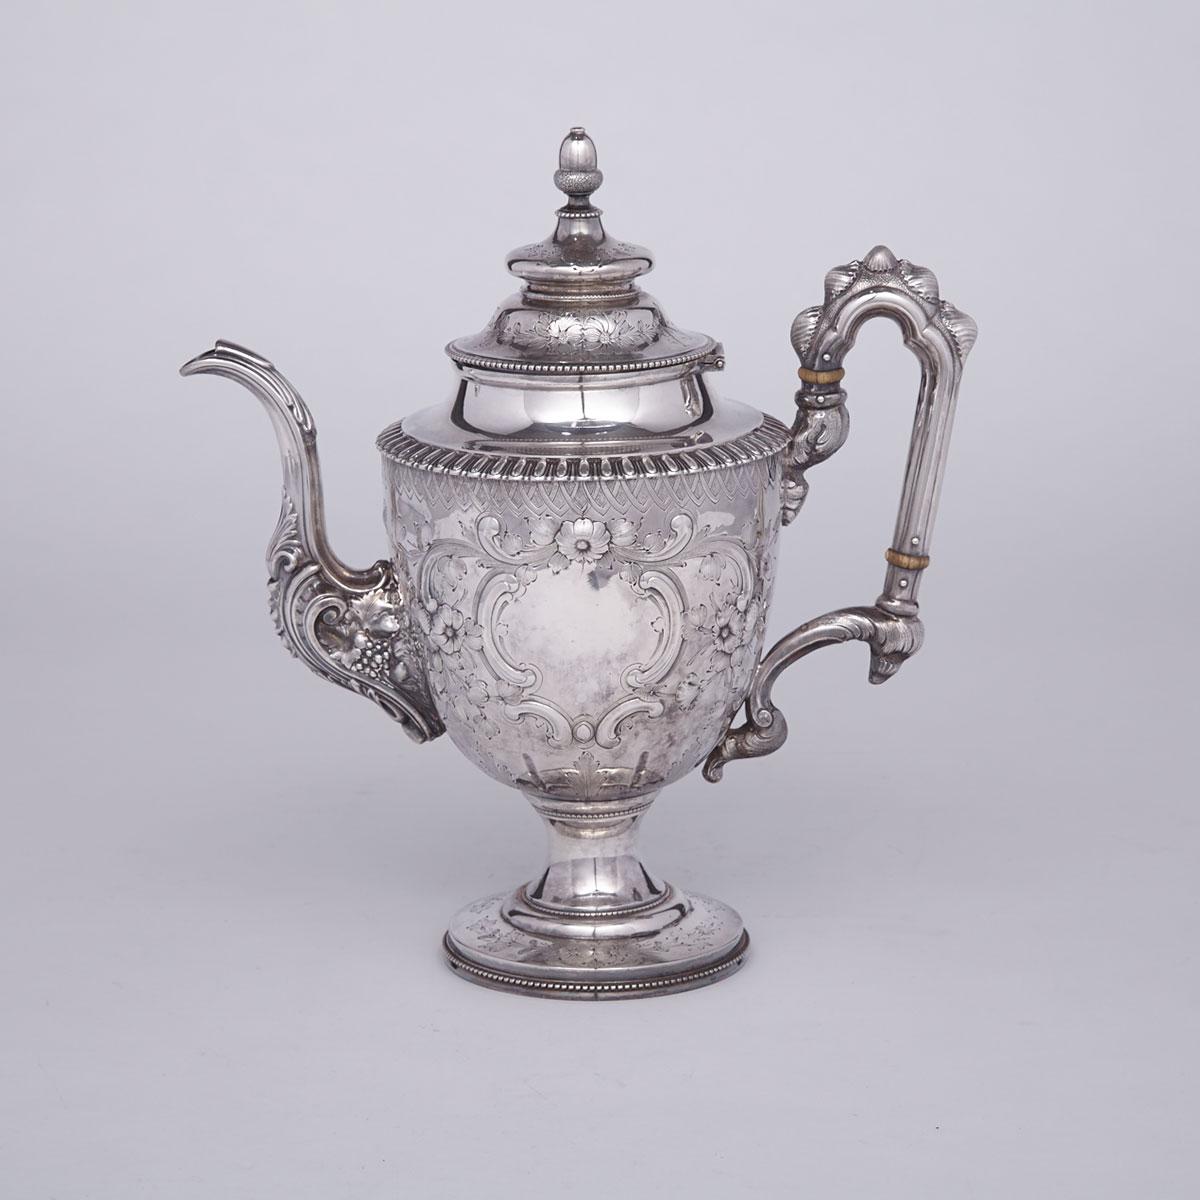 American Silver Coffee Pot, William Gale & Son, New York, N.Y., 1856